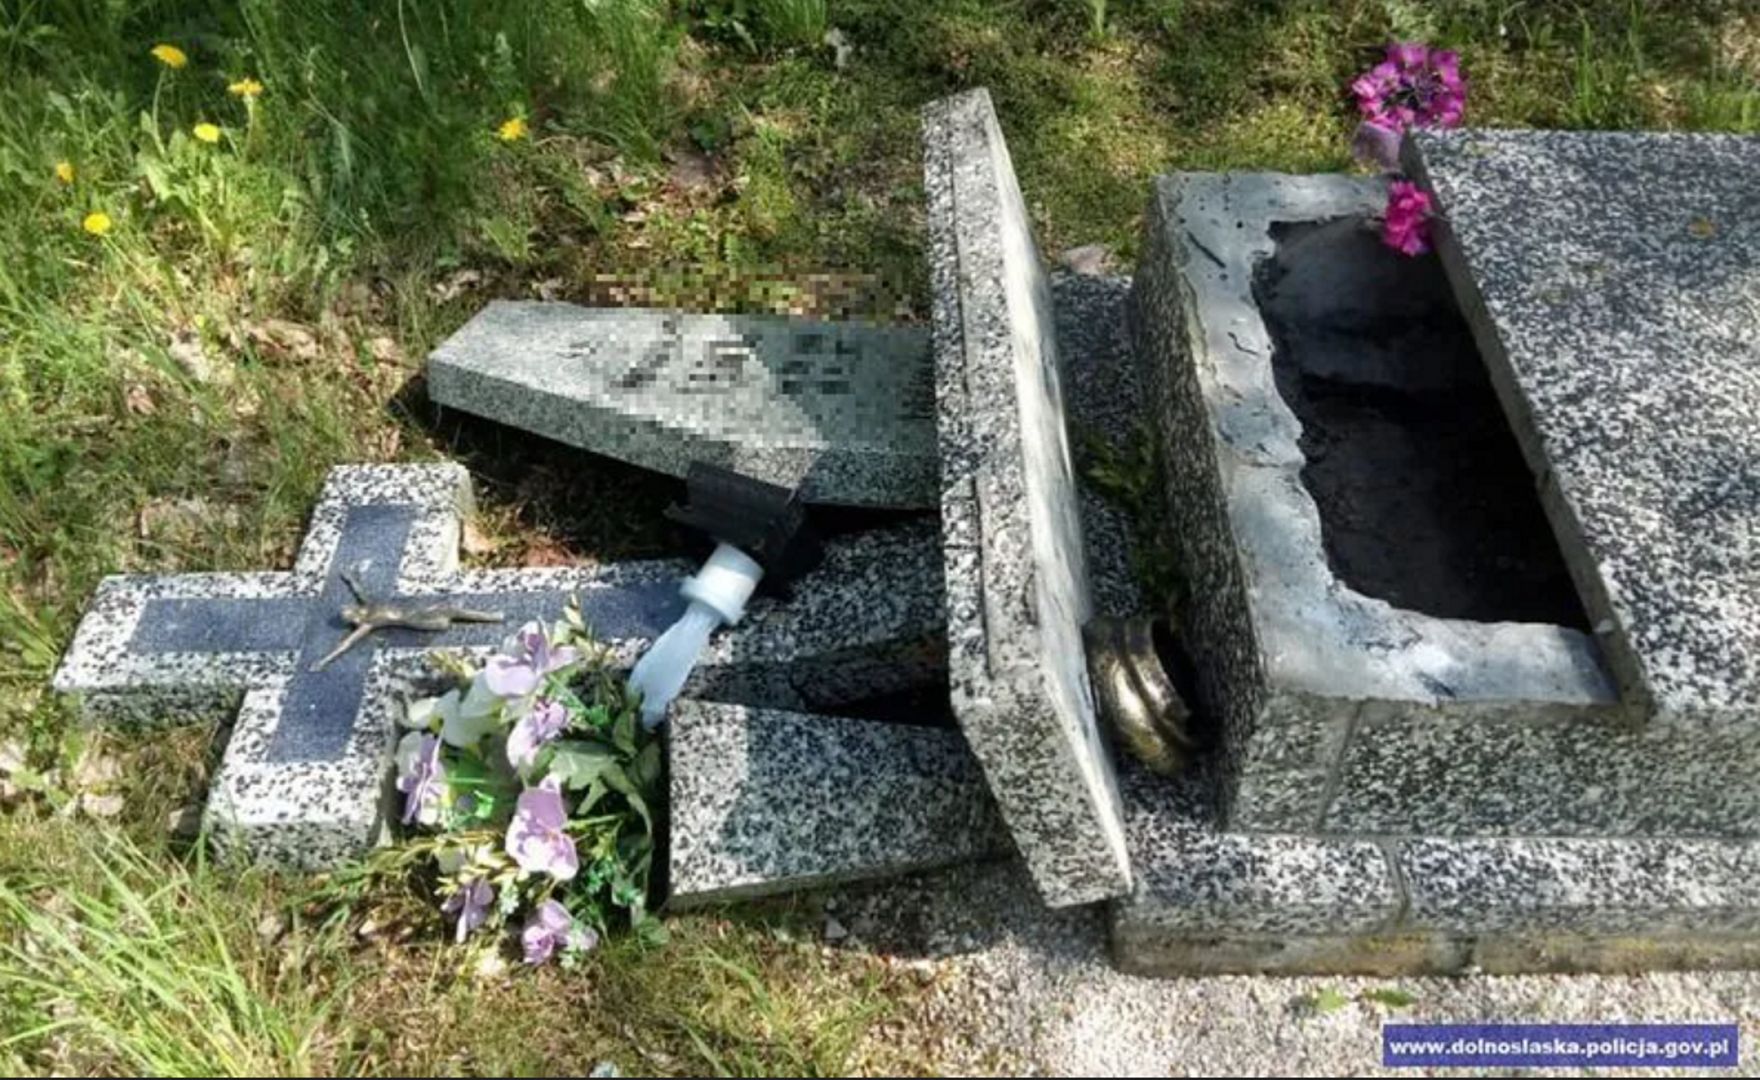 Groby na cmentarzu w Jaszkowie zapadły się. "Wygląda to strasznie!"